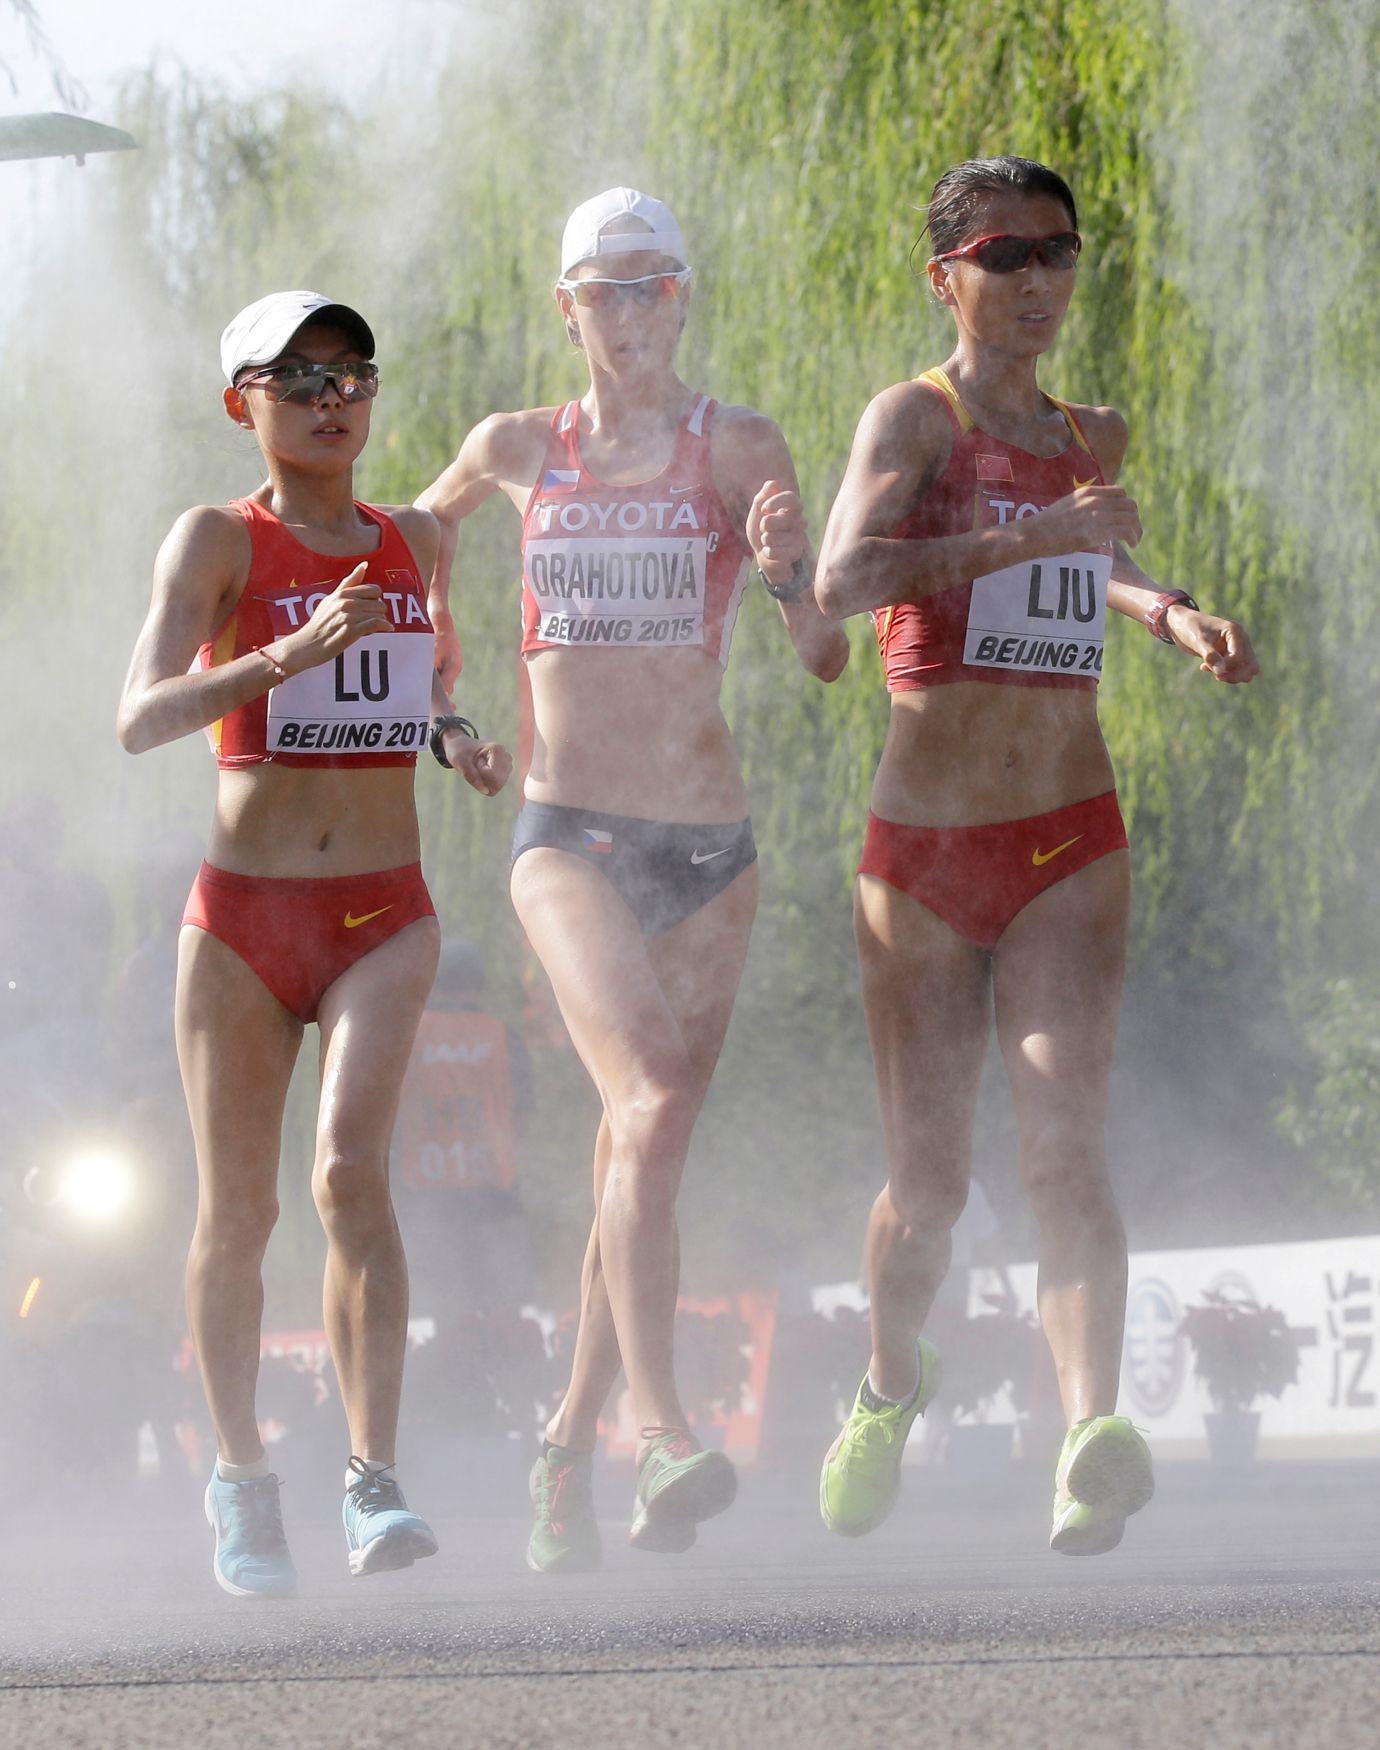 MS v atletice, chůze 20 km: Lu Siou-č', Anežka Drahotová a Liou Chung